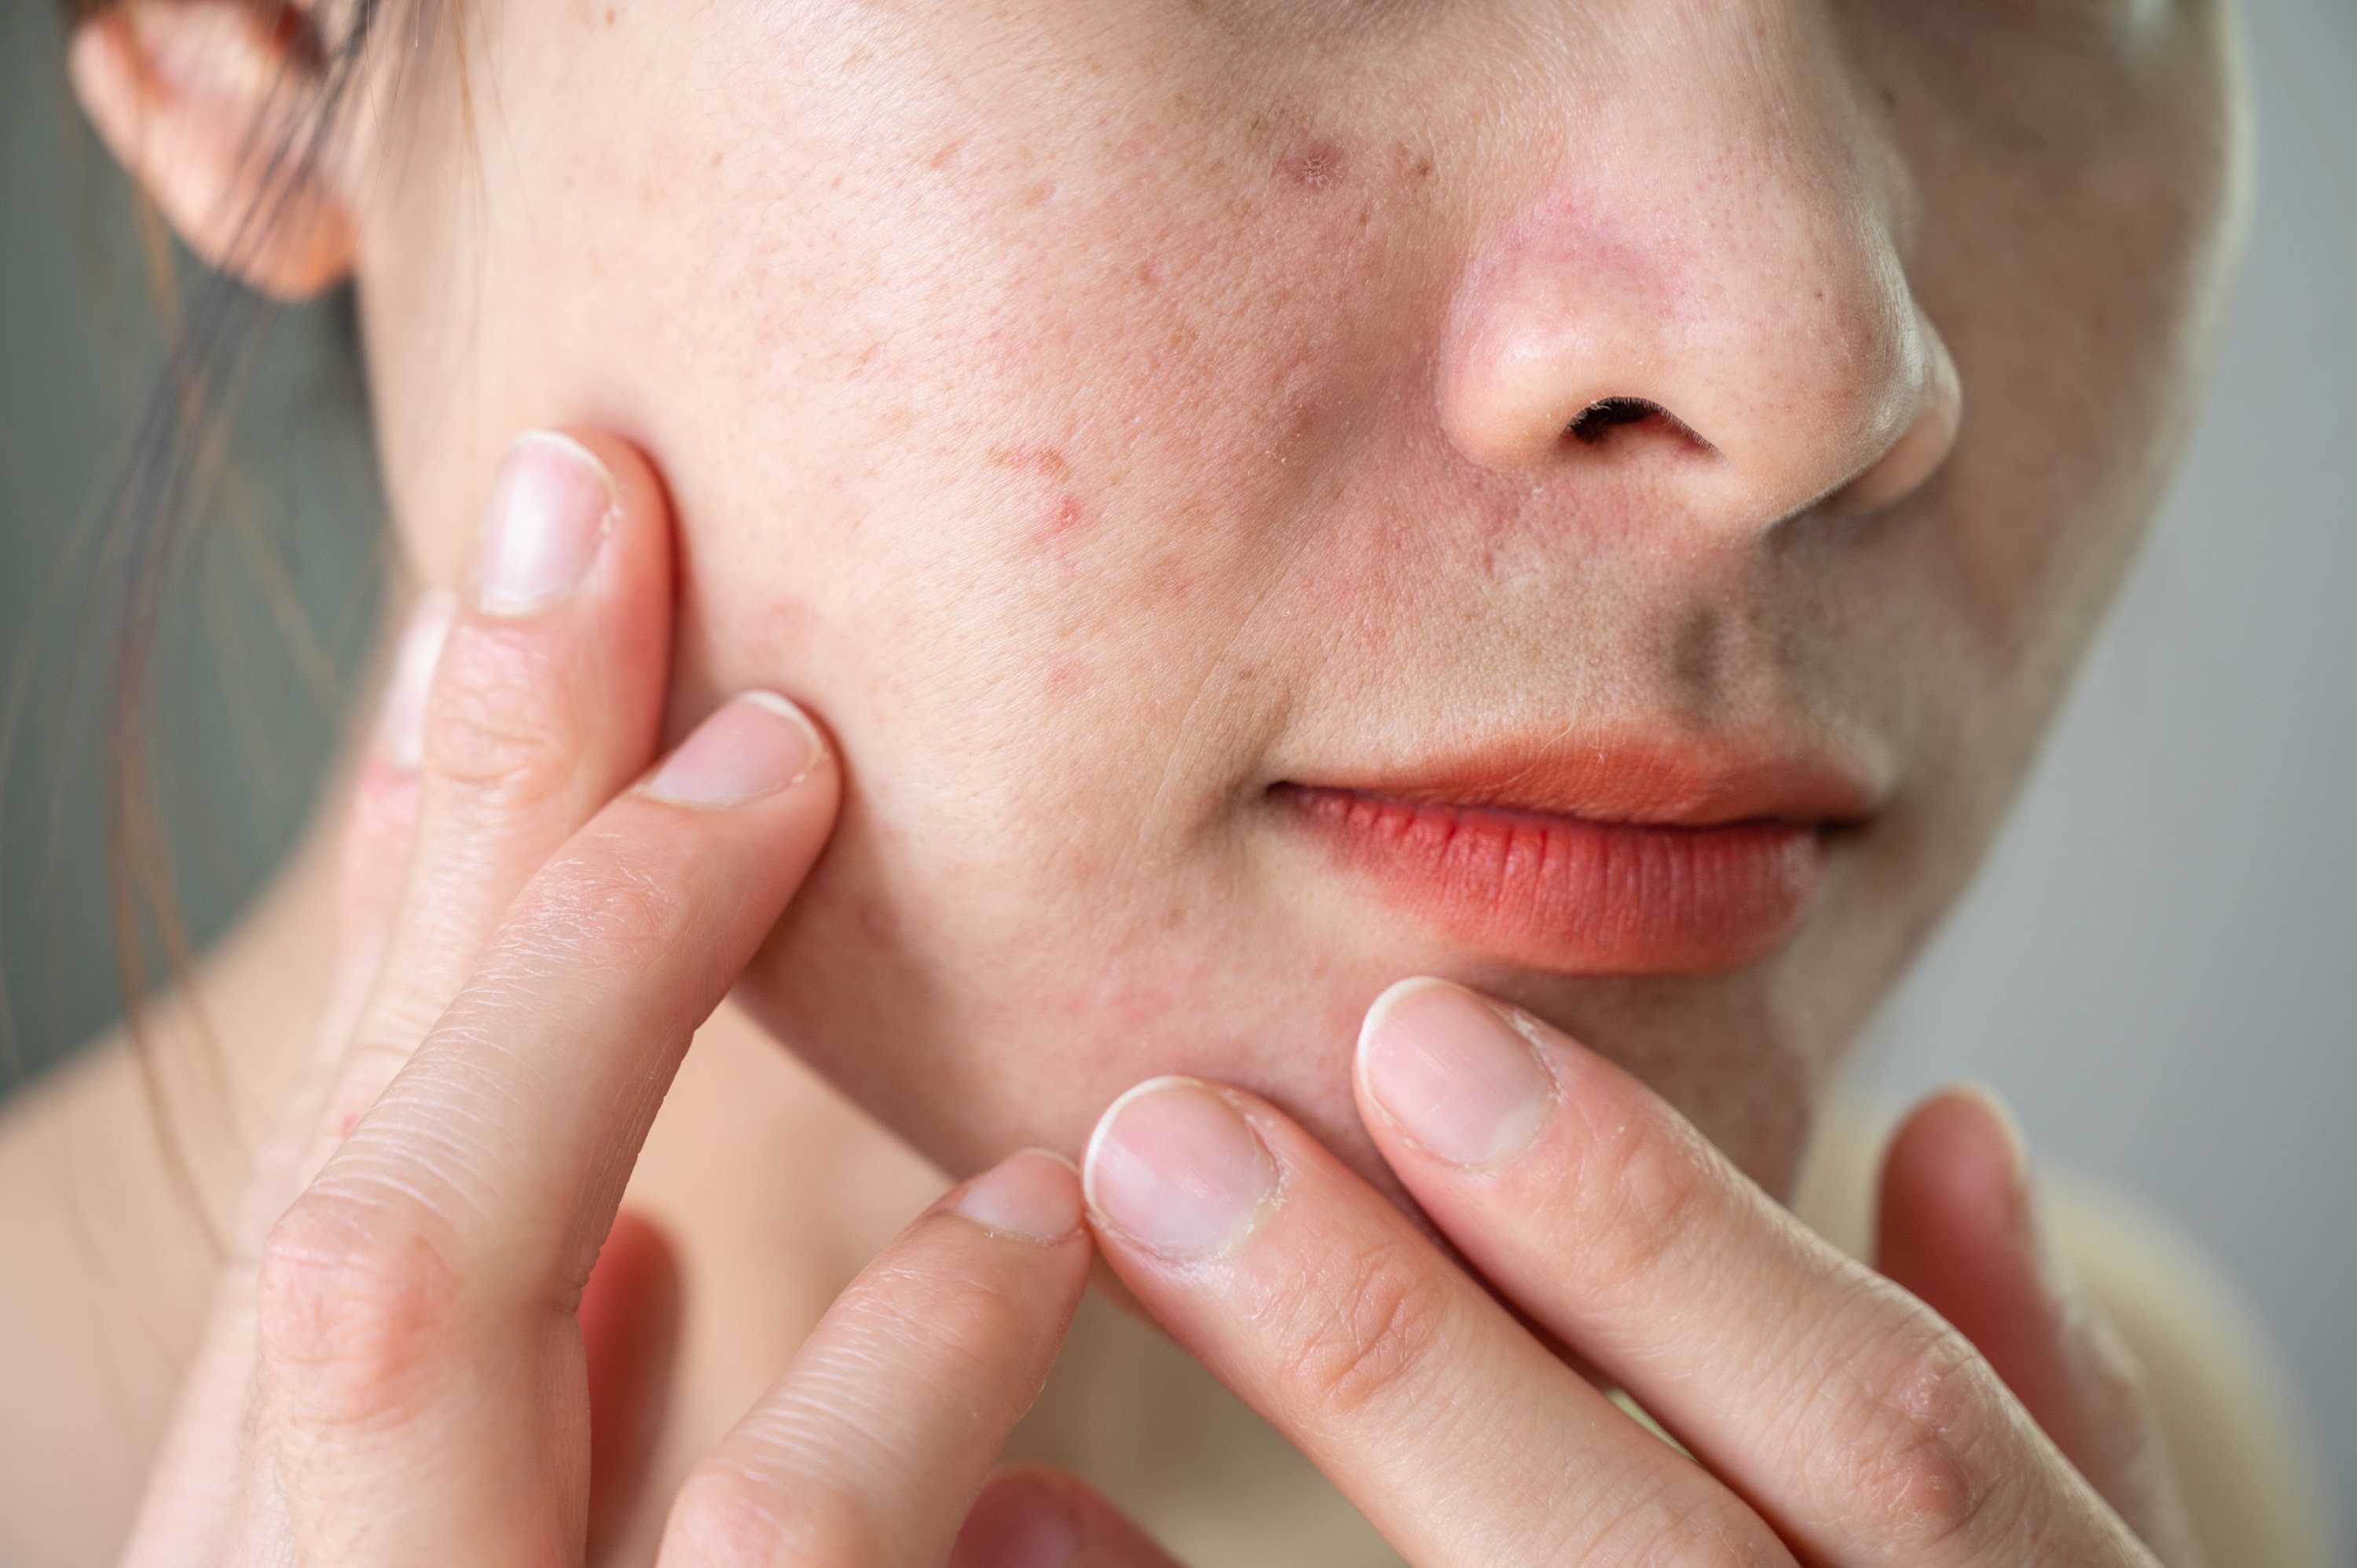 a close-up of acne